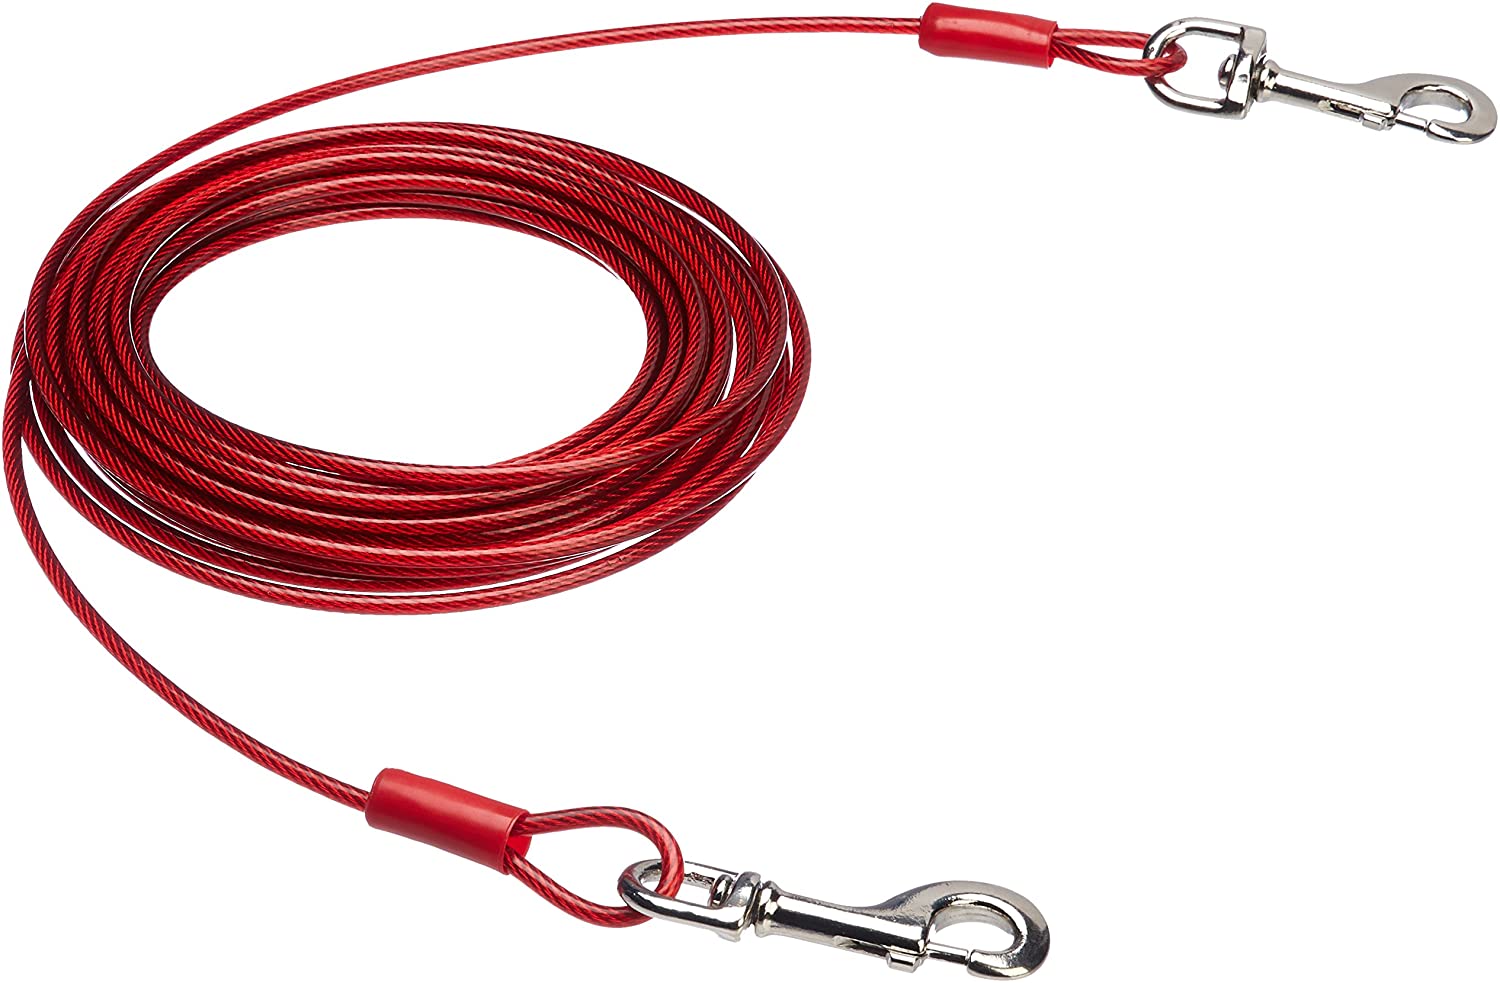  AmazonBasics - Cable para atar perros, hasta 57 kg, 9,14 m 